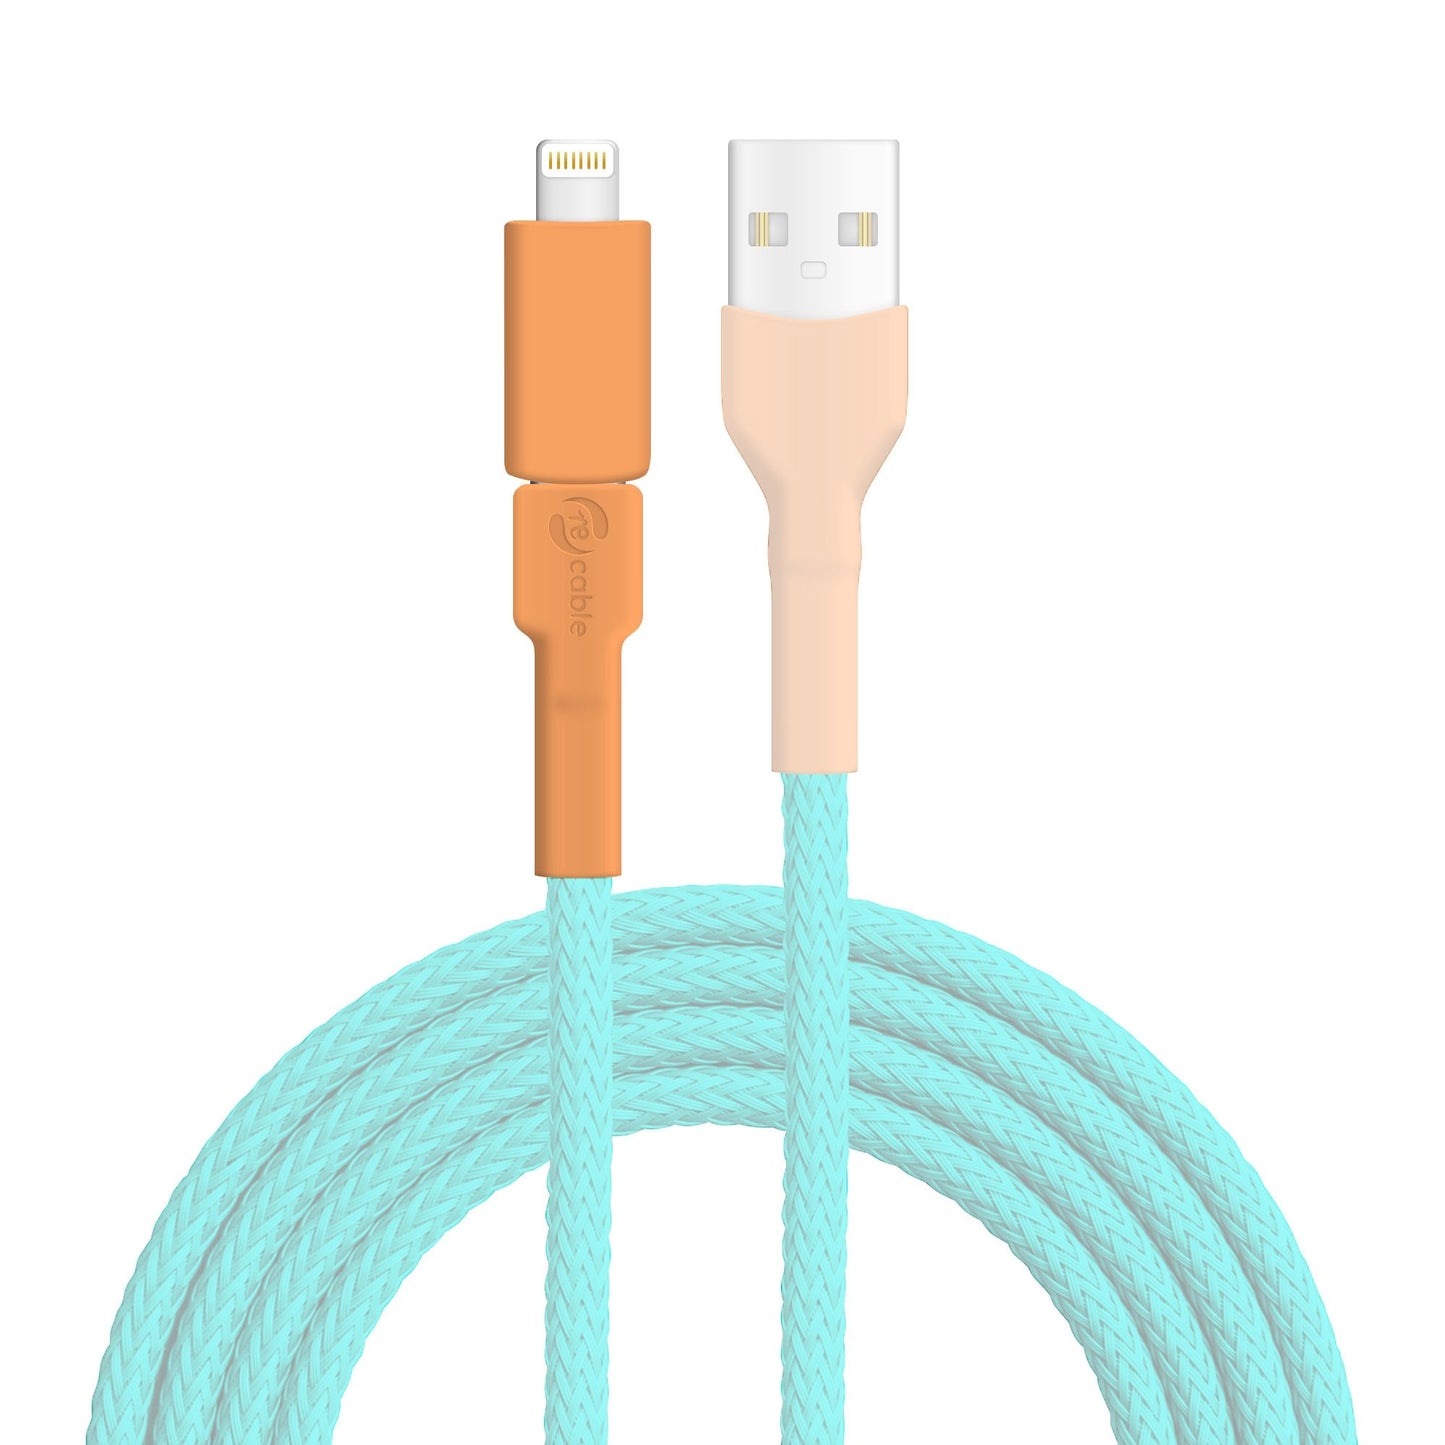 Micro USB Stecker und Lightning (iPhone) Adapter zur Erkennung des Ersatzteils hervorgehoben, das Kabel und der USB A Stecker sind ausgeblendet